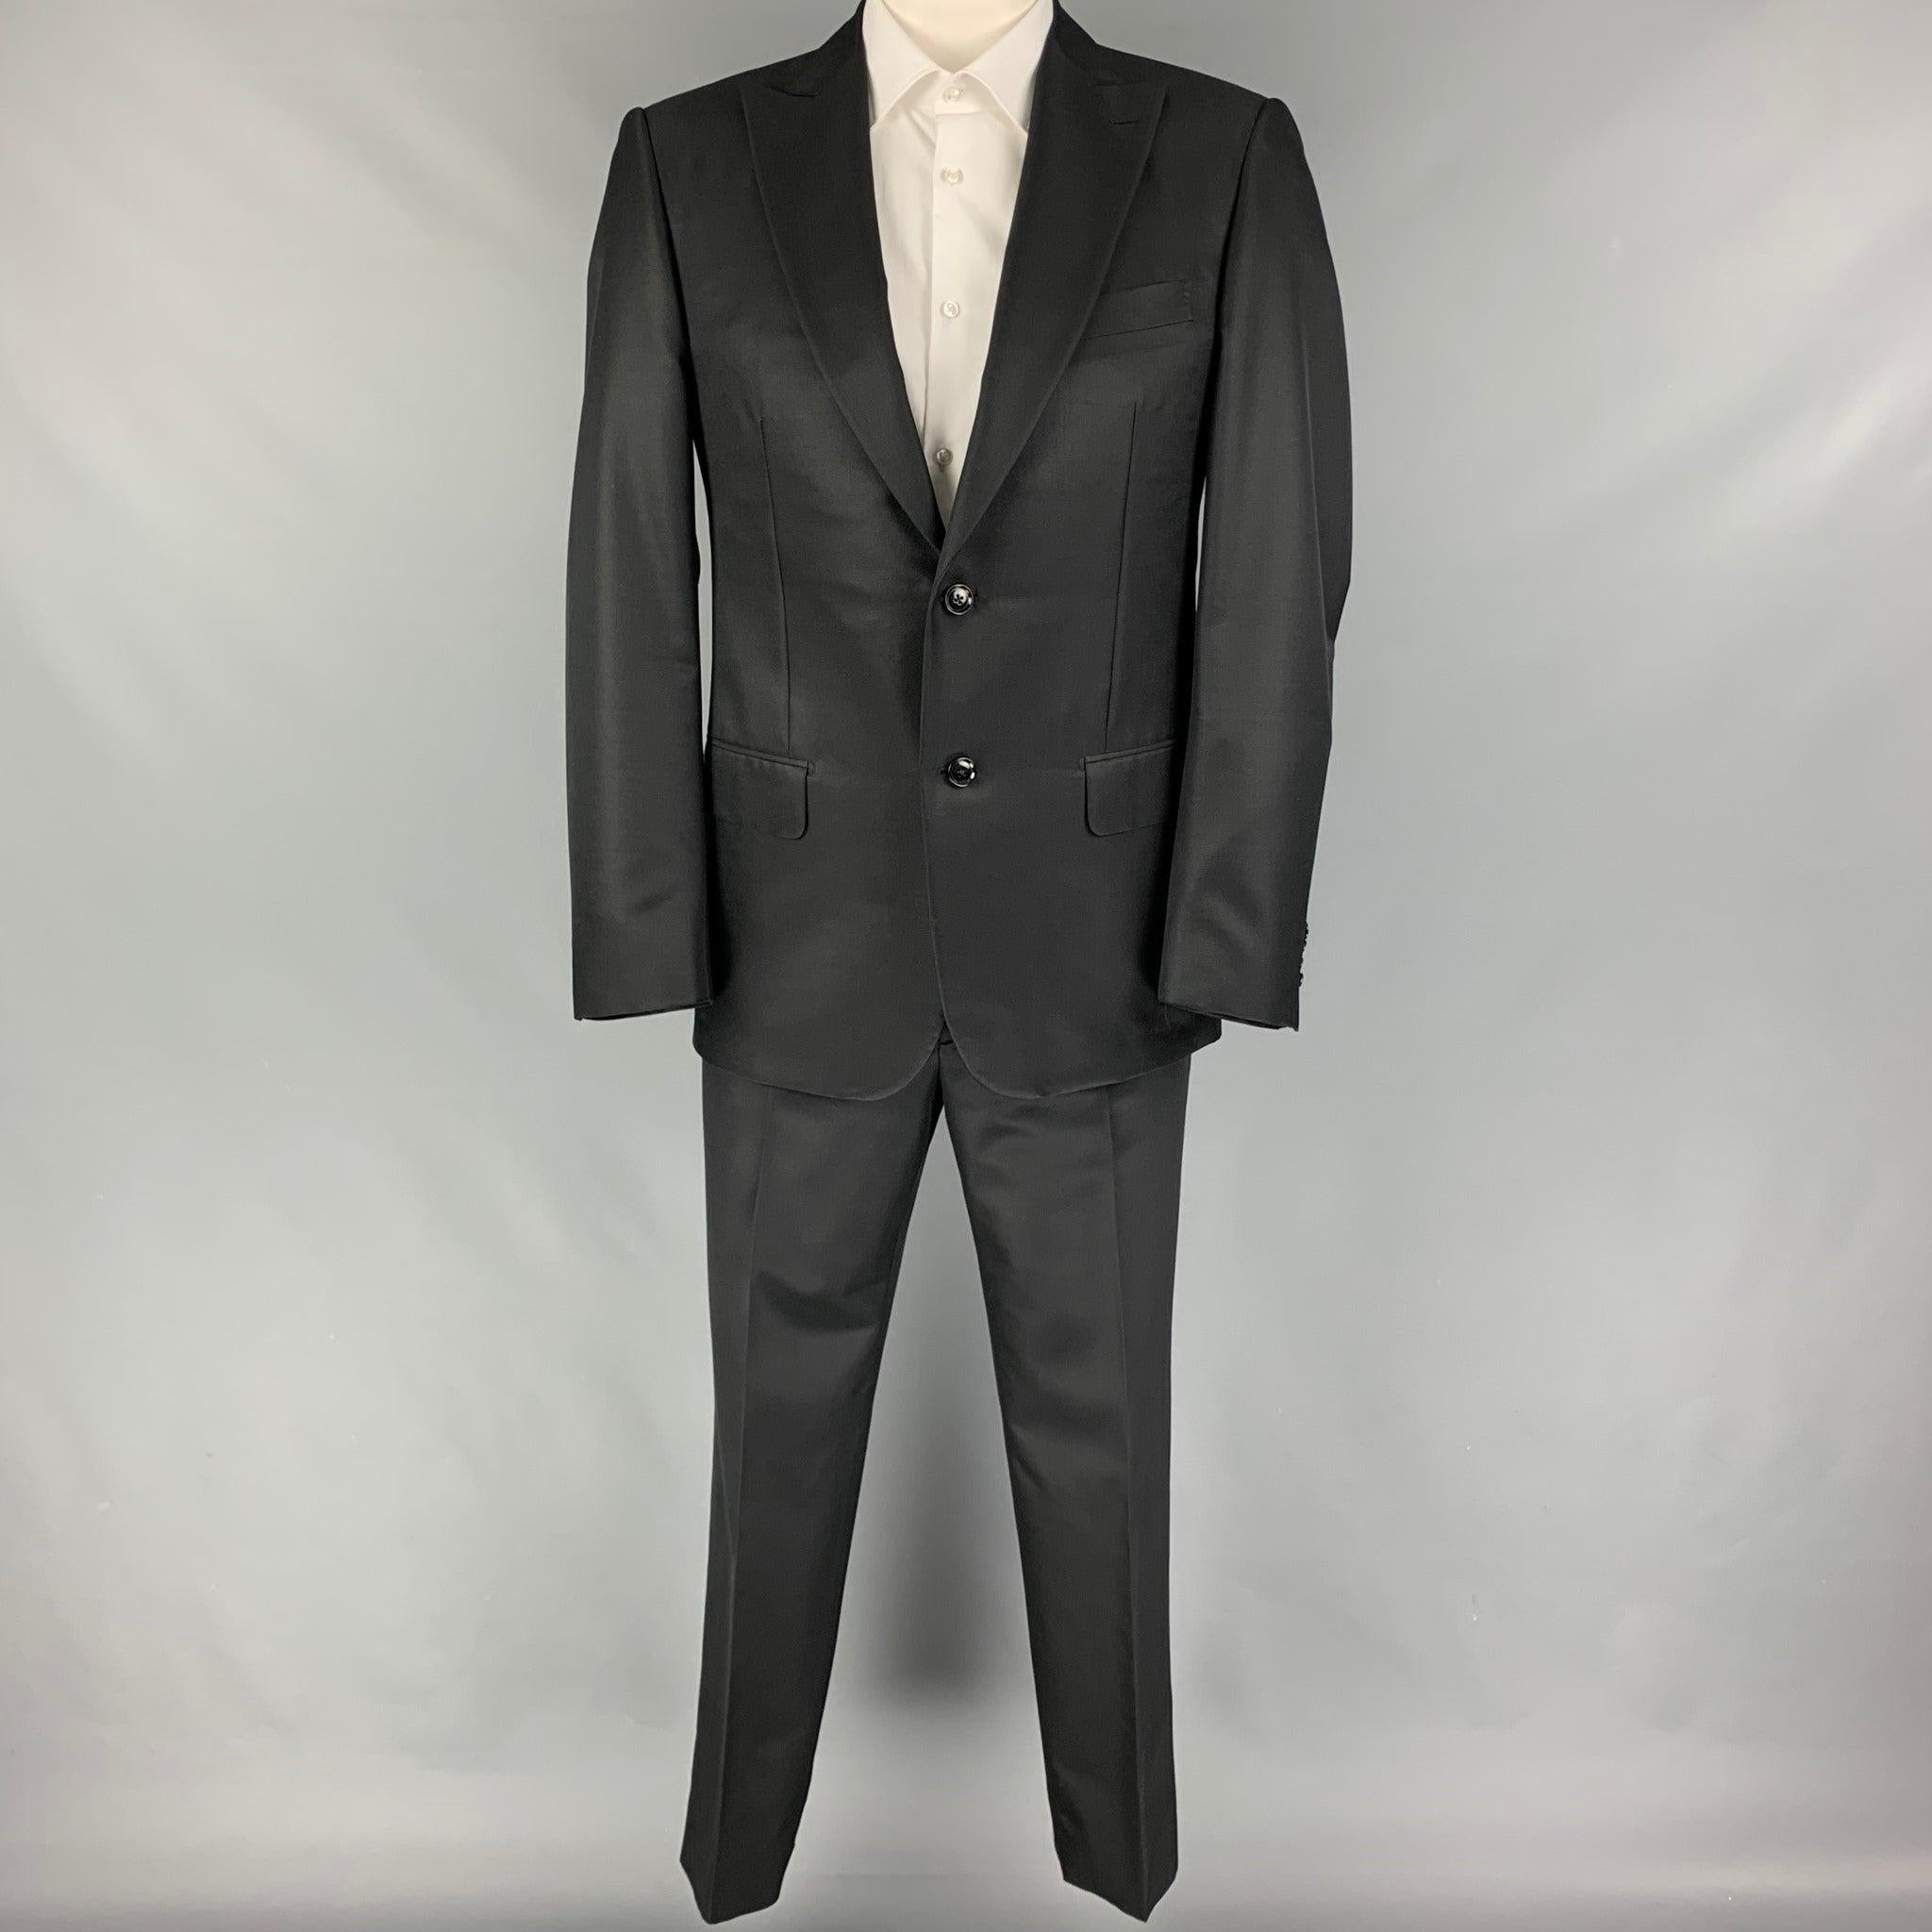 Le costume PAL ZILERI est en laine/soie noire avec doublure complète et comprend un manteau sport à un seul boutonnage avec revers en pointe et un pantalon assorti à devant plat. Fabriquées en Italie. Très bon état d'origine. 

Marqué :   50